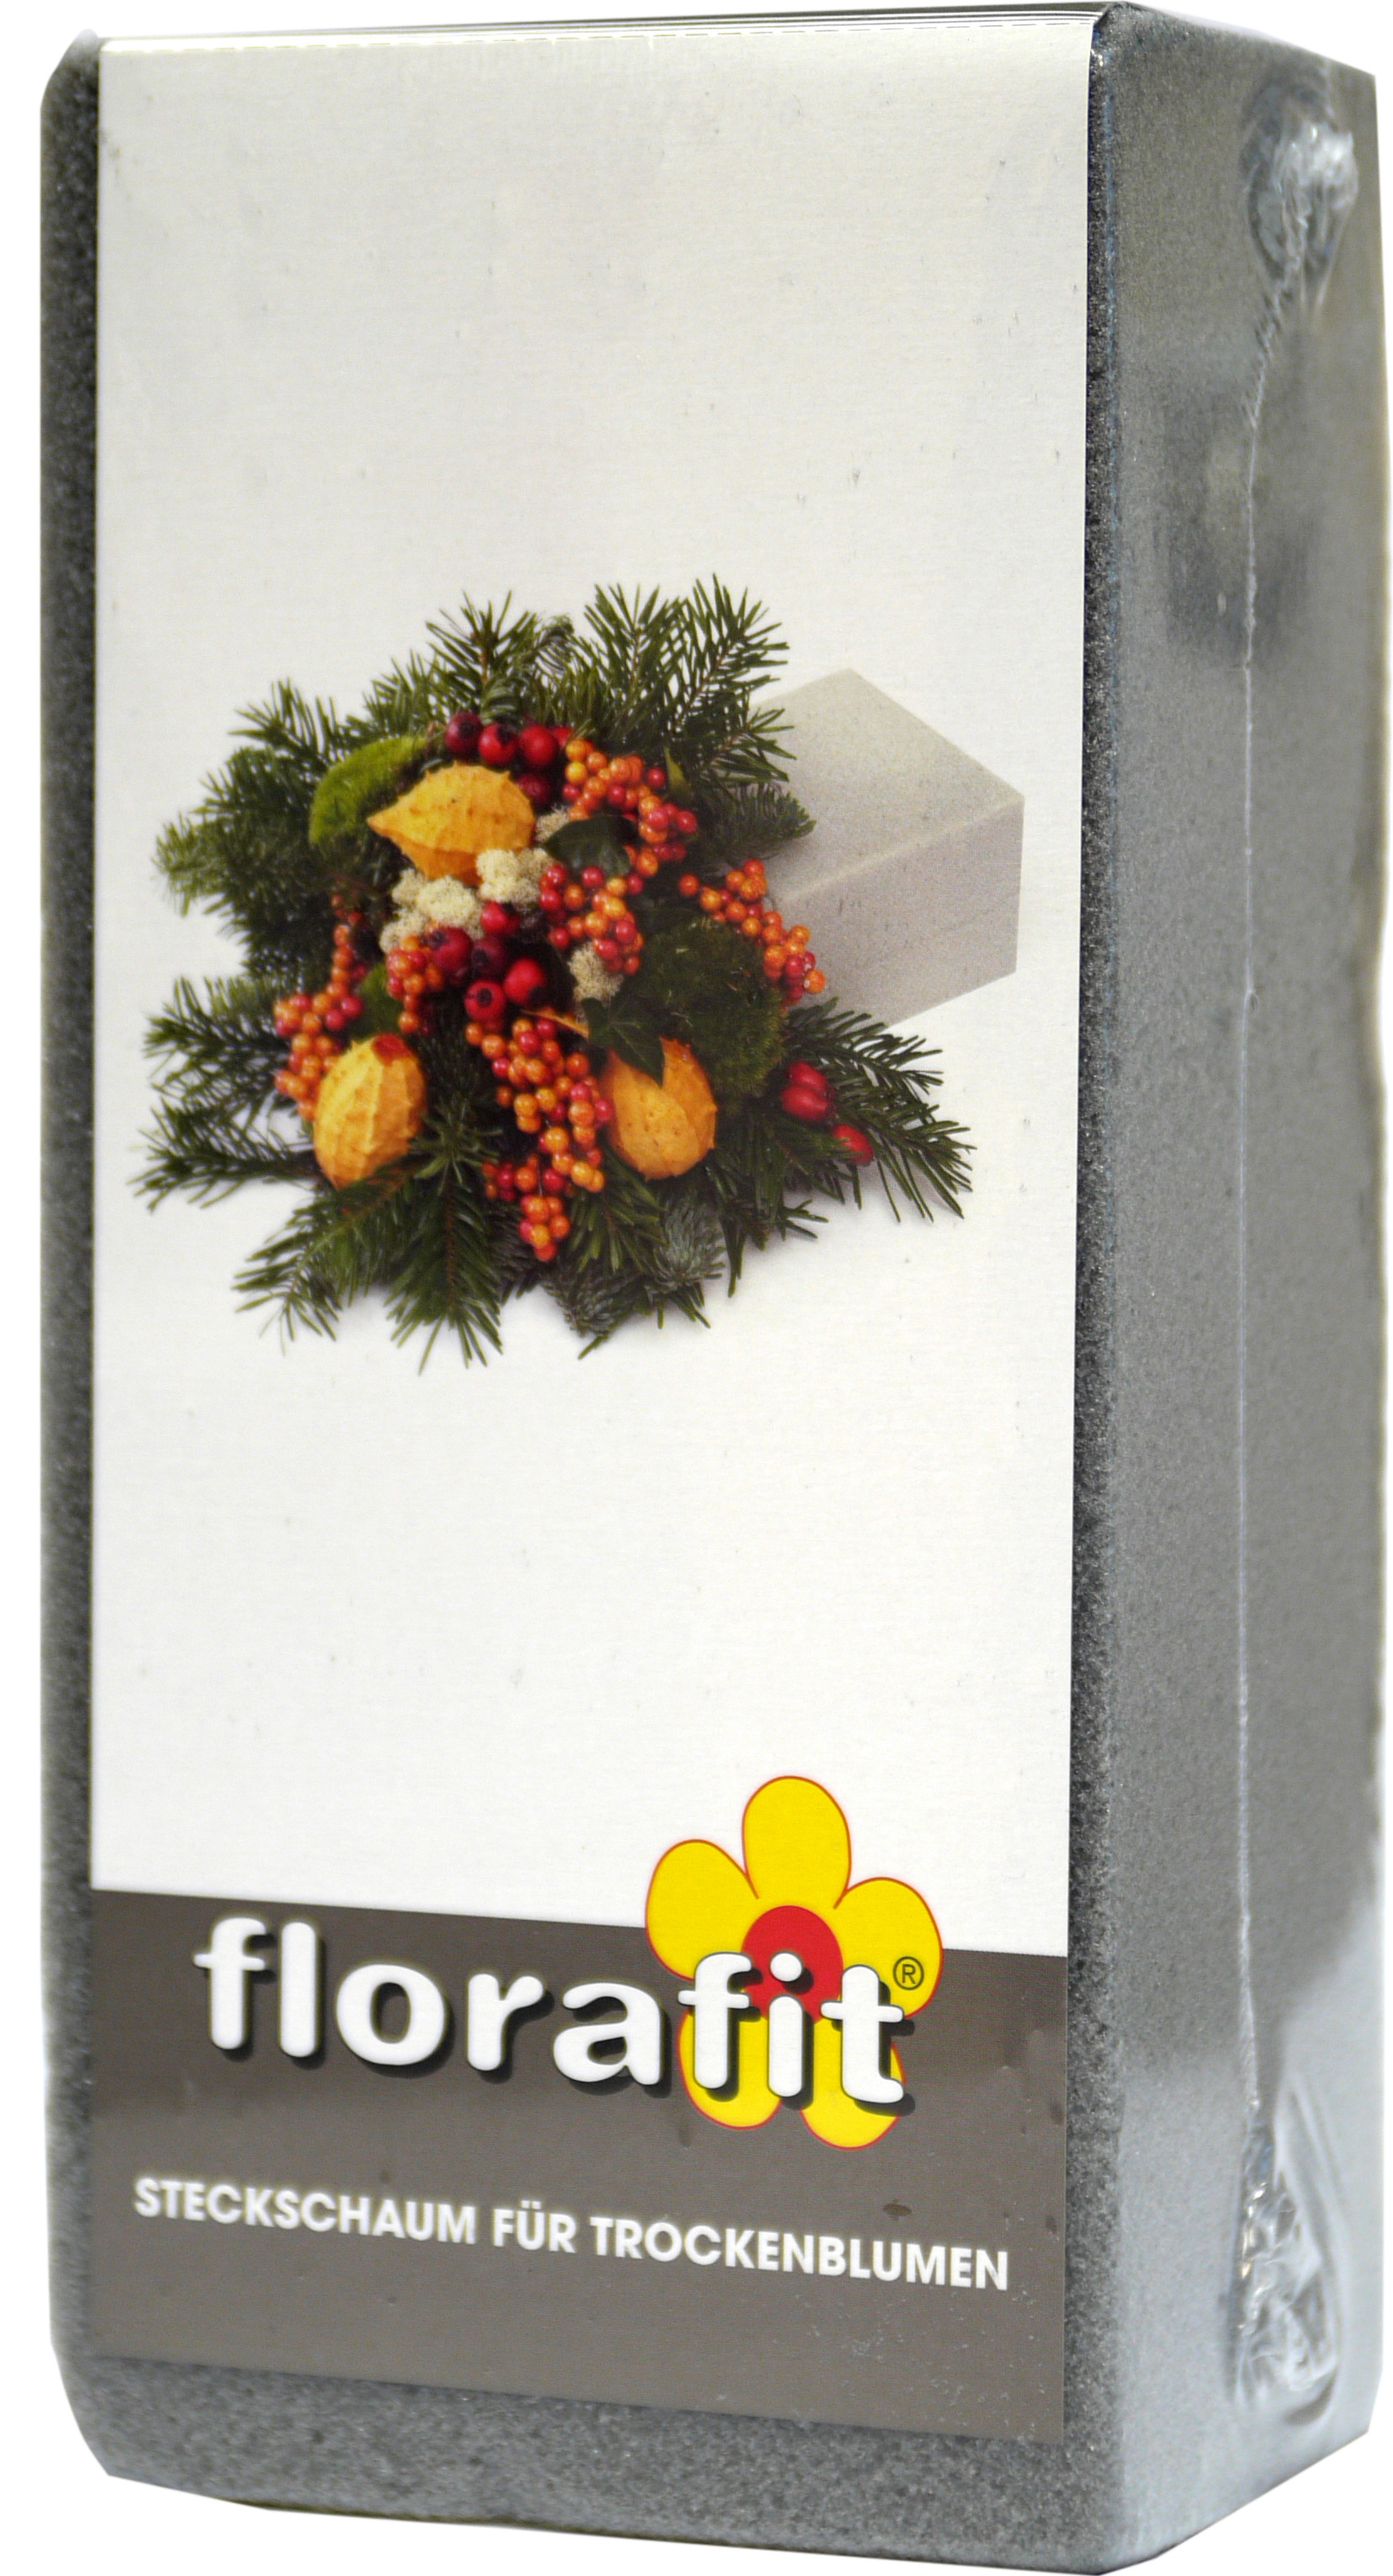 02276 - florafit Steckschaum für Trockenblumen